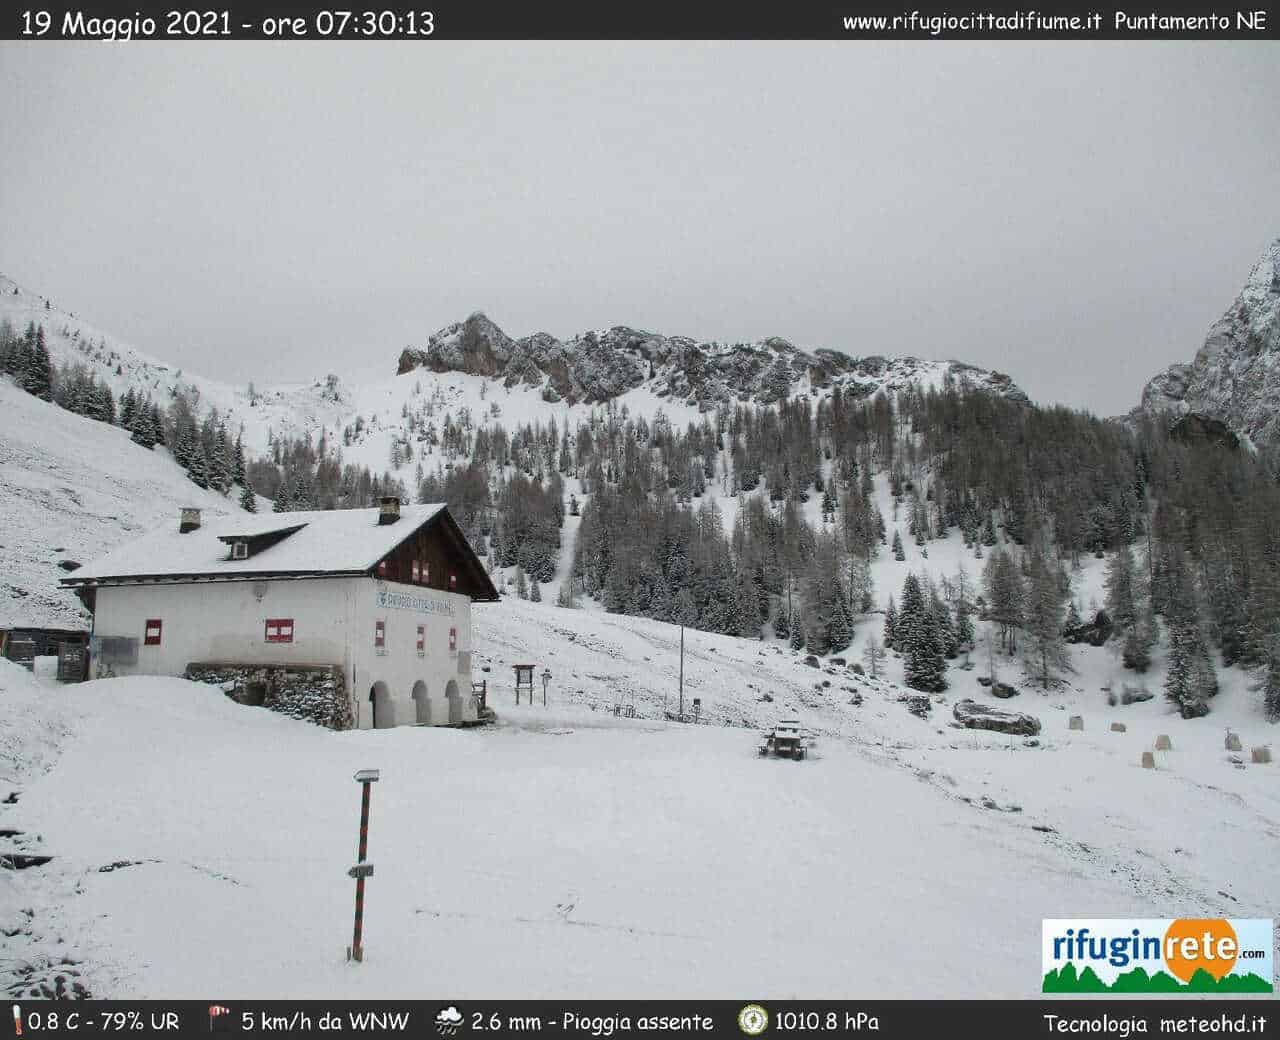 Panorama invernale a inizio mattinata del 19 maggio al Rifugio Città di Fiume nelle Dolomiti a quasi 2000 metri d'altezza